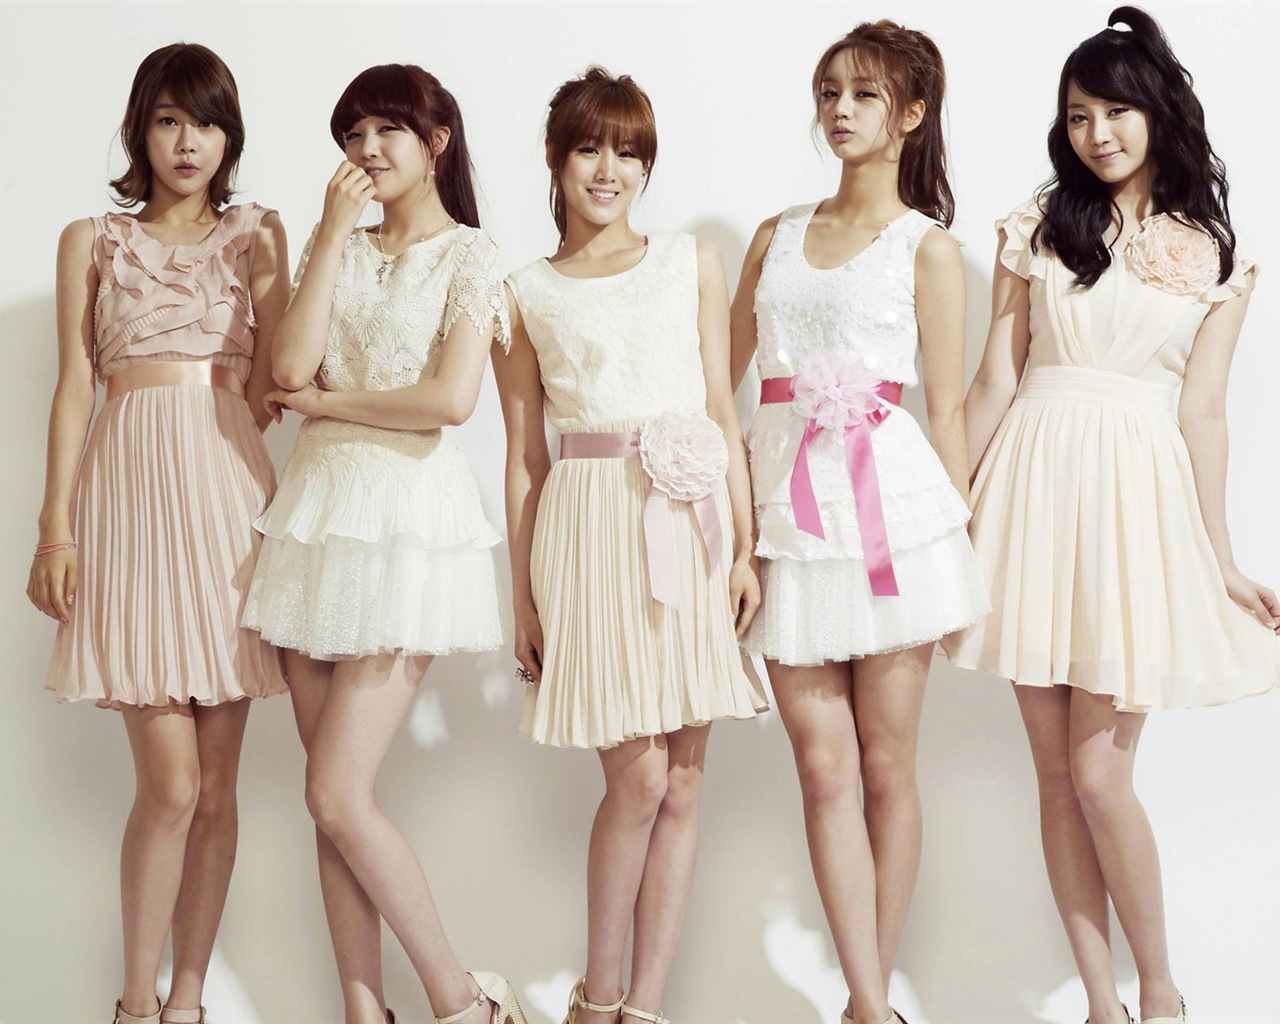 Girls 'Day Korea Popmusik Mädchen HD Wallpaper #15 - 1280x1024